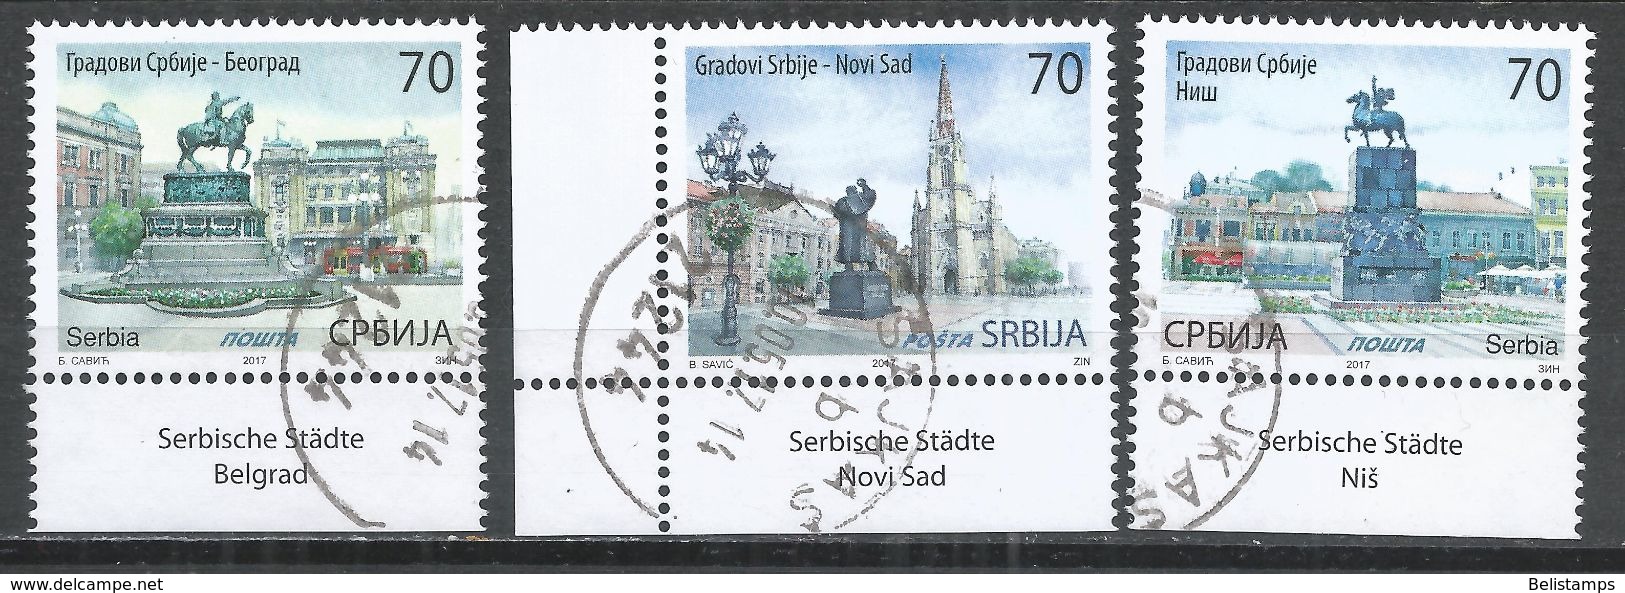 Serbia 2017. Scott #777-9 (U) Statues In Belgrade, Novi Sad And Nis  *Complete Set* - Serbia